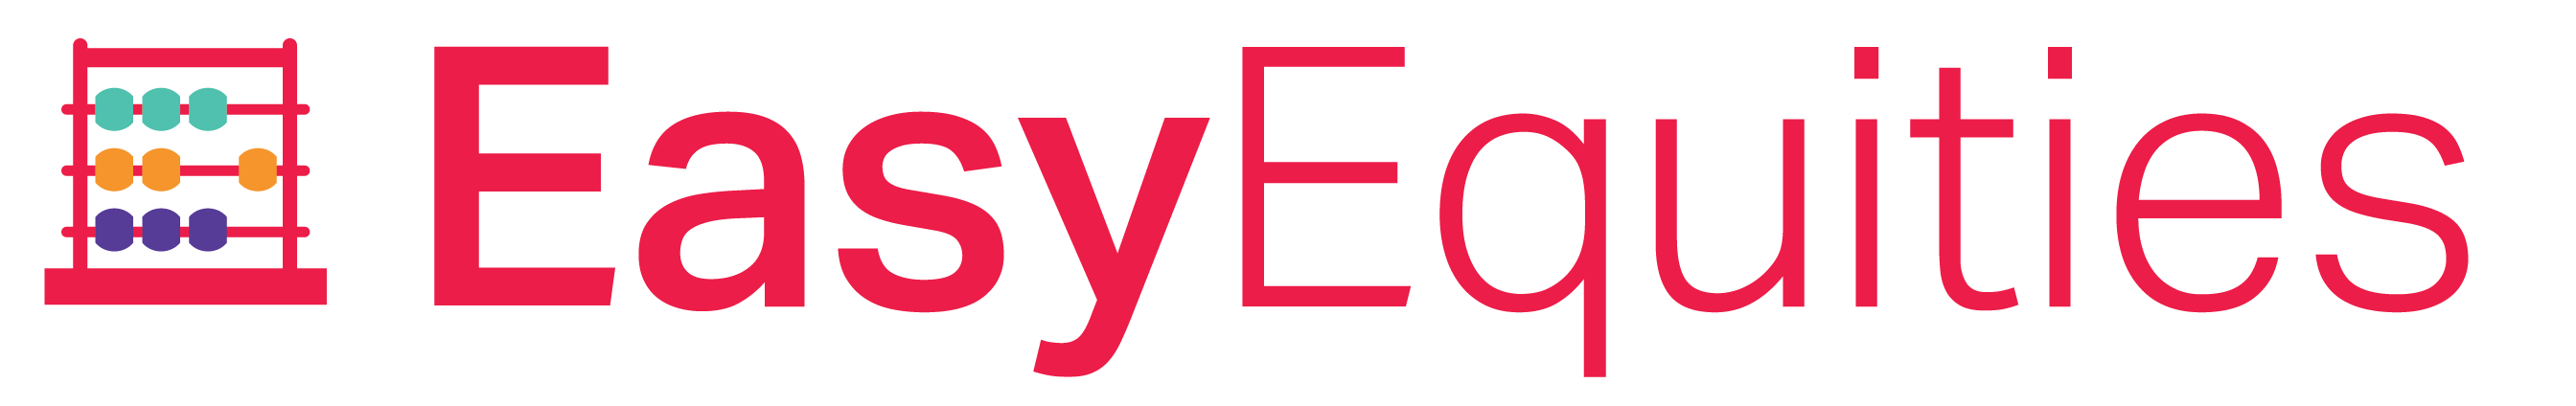 EasyEquities_Logo-1